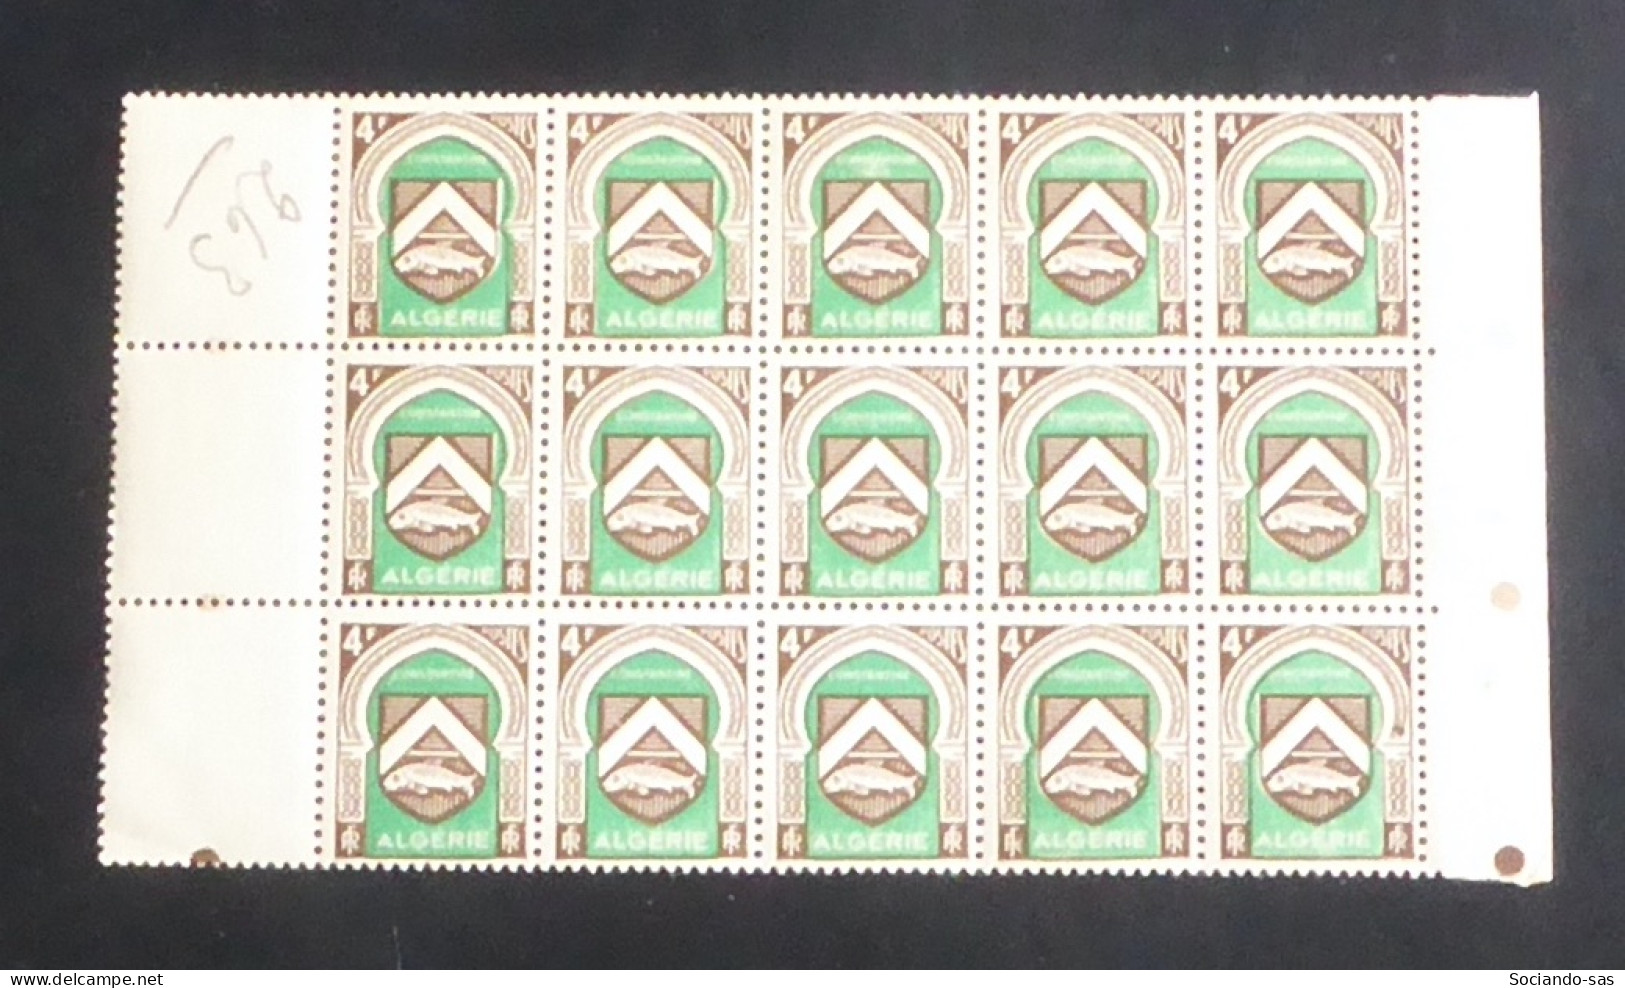 ALGERIE - 1947 - N°YT. 263 - Blason De Constantine 4f - Bloc De 15 Bord De Feuille - Neuf Luxe ** / MNH - Neufs